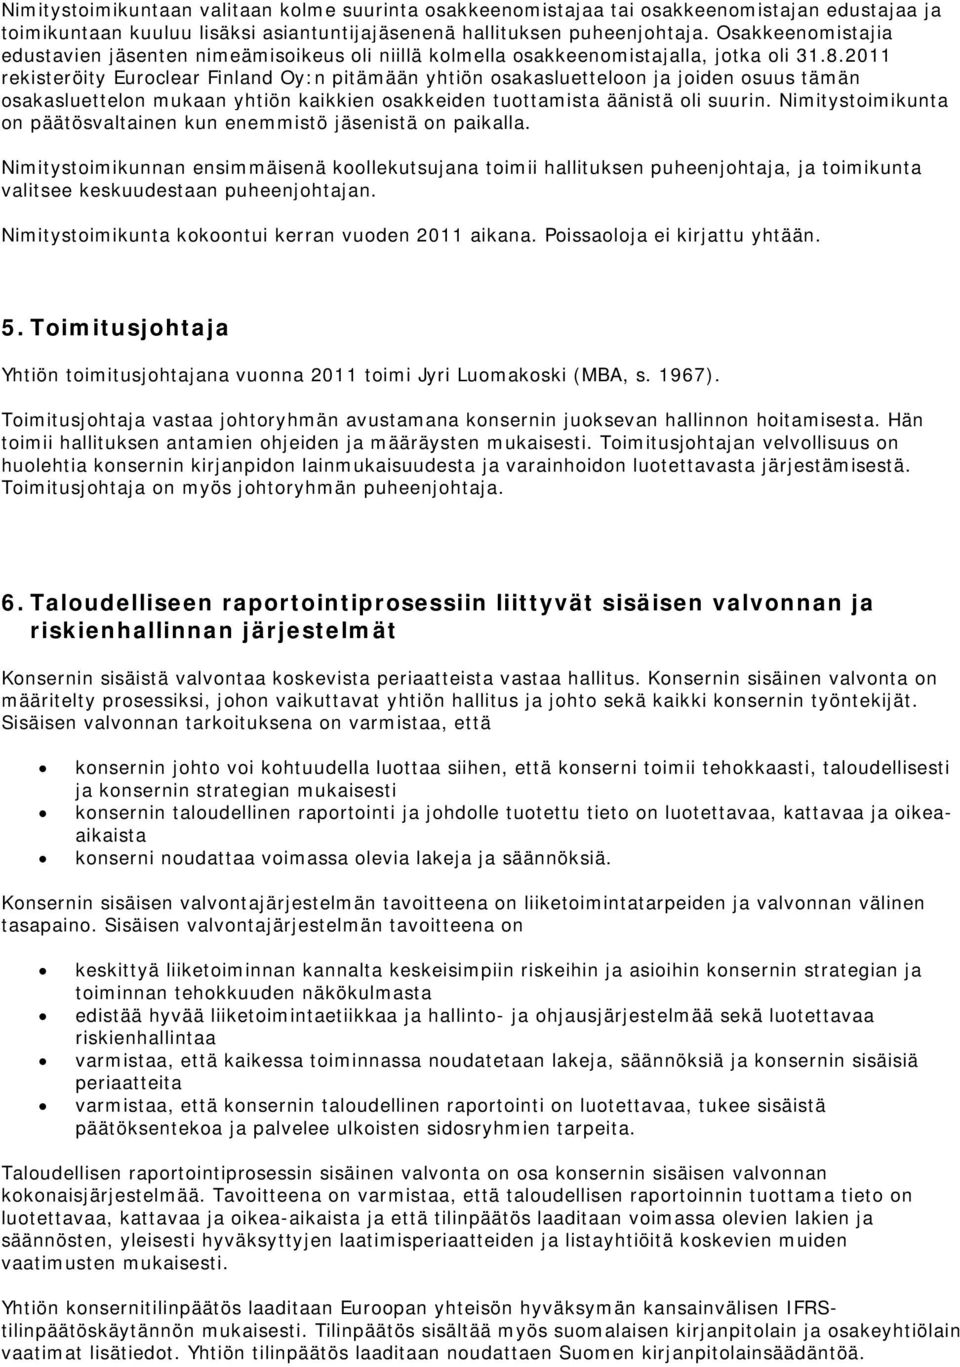 2011 rekisteröity Euroclear Finland Oy:n pitämään yhtiön osakasluetteloon ja joiden osuus tämän osakasluettelon mukaan yhtiön kaikkien osakkeiden tuottamista äänistä oli suurin.